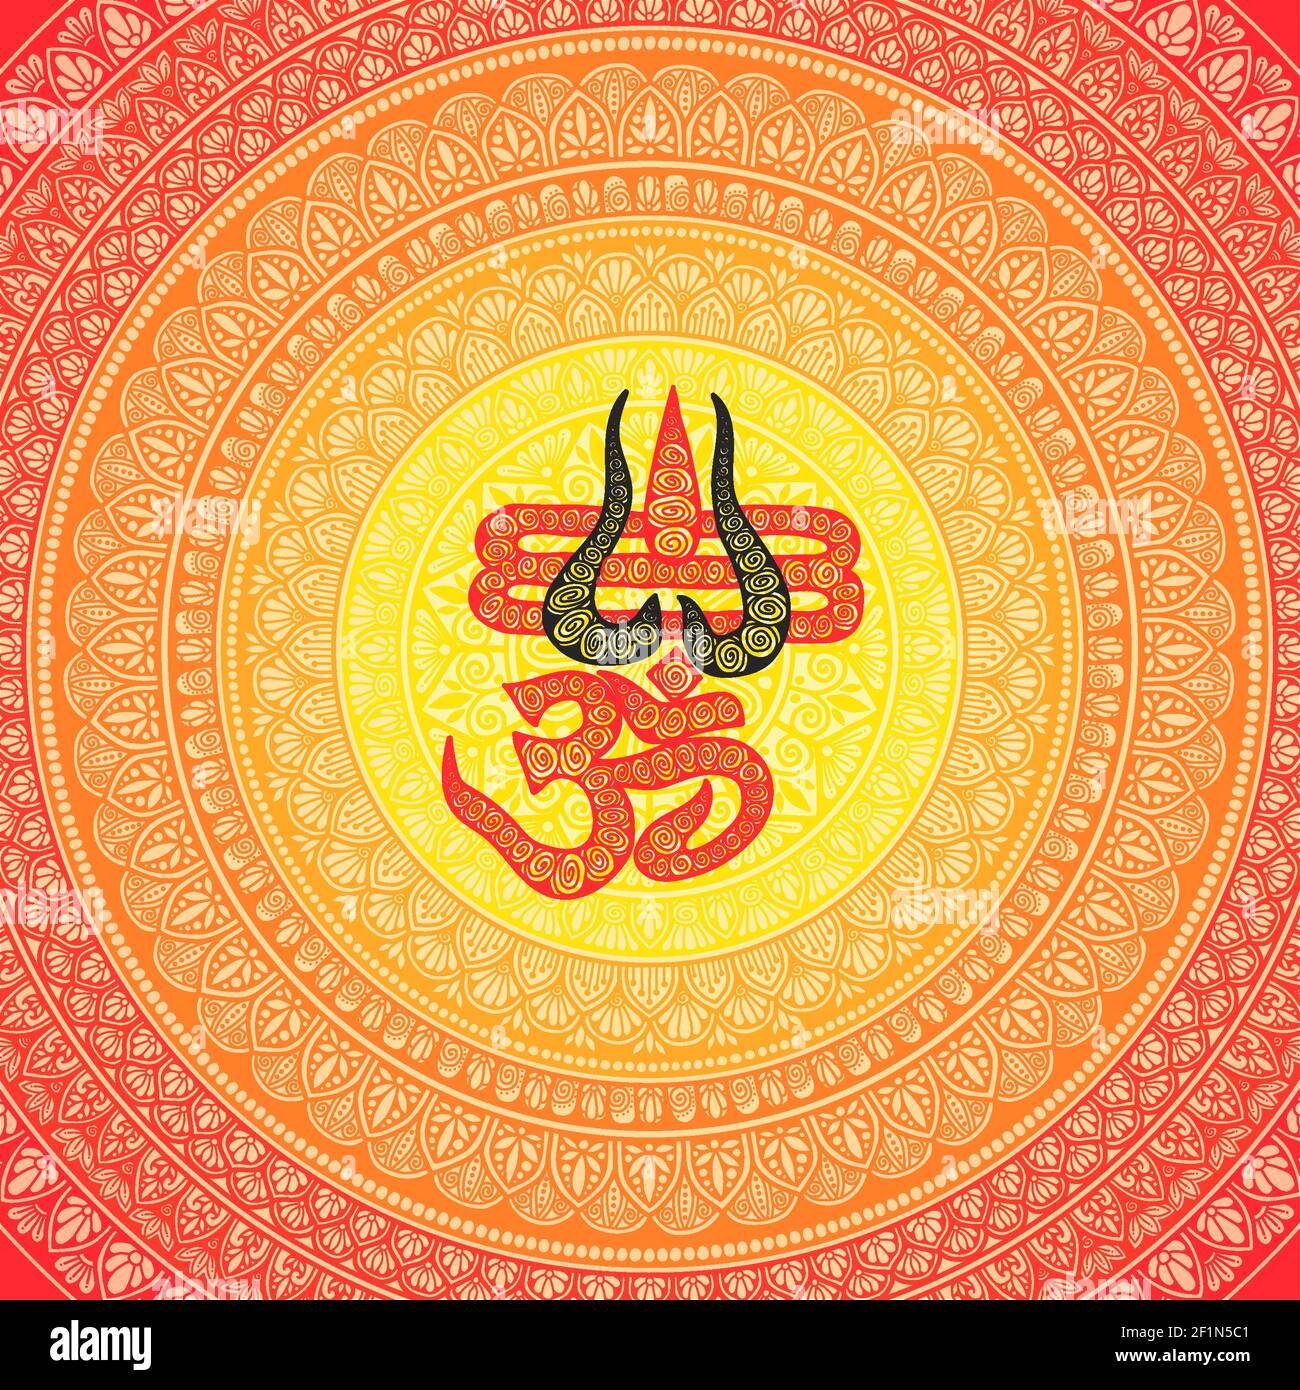 Disegno circolare in forma di mandala per Henna, Mehndi, tatuaggio, decorazione. Ornamento decorativo in stile orientale con antico mantra indù OM. Contorno Foto Stock